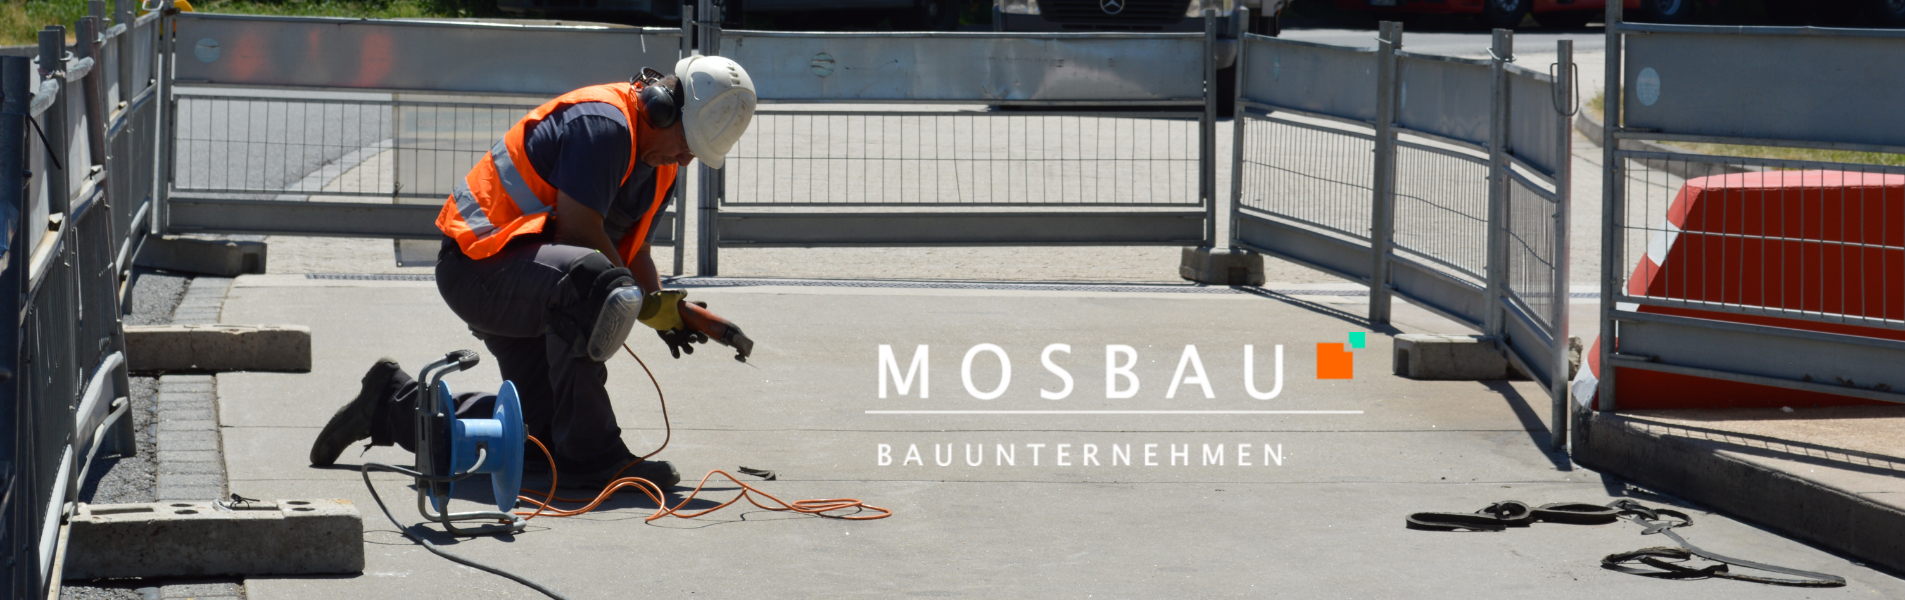 MOSBAU GmbH – Bauunternehmen